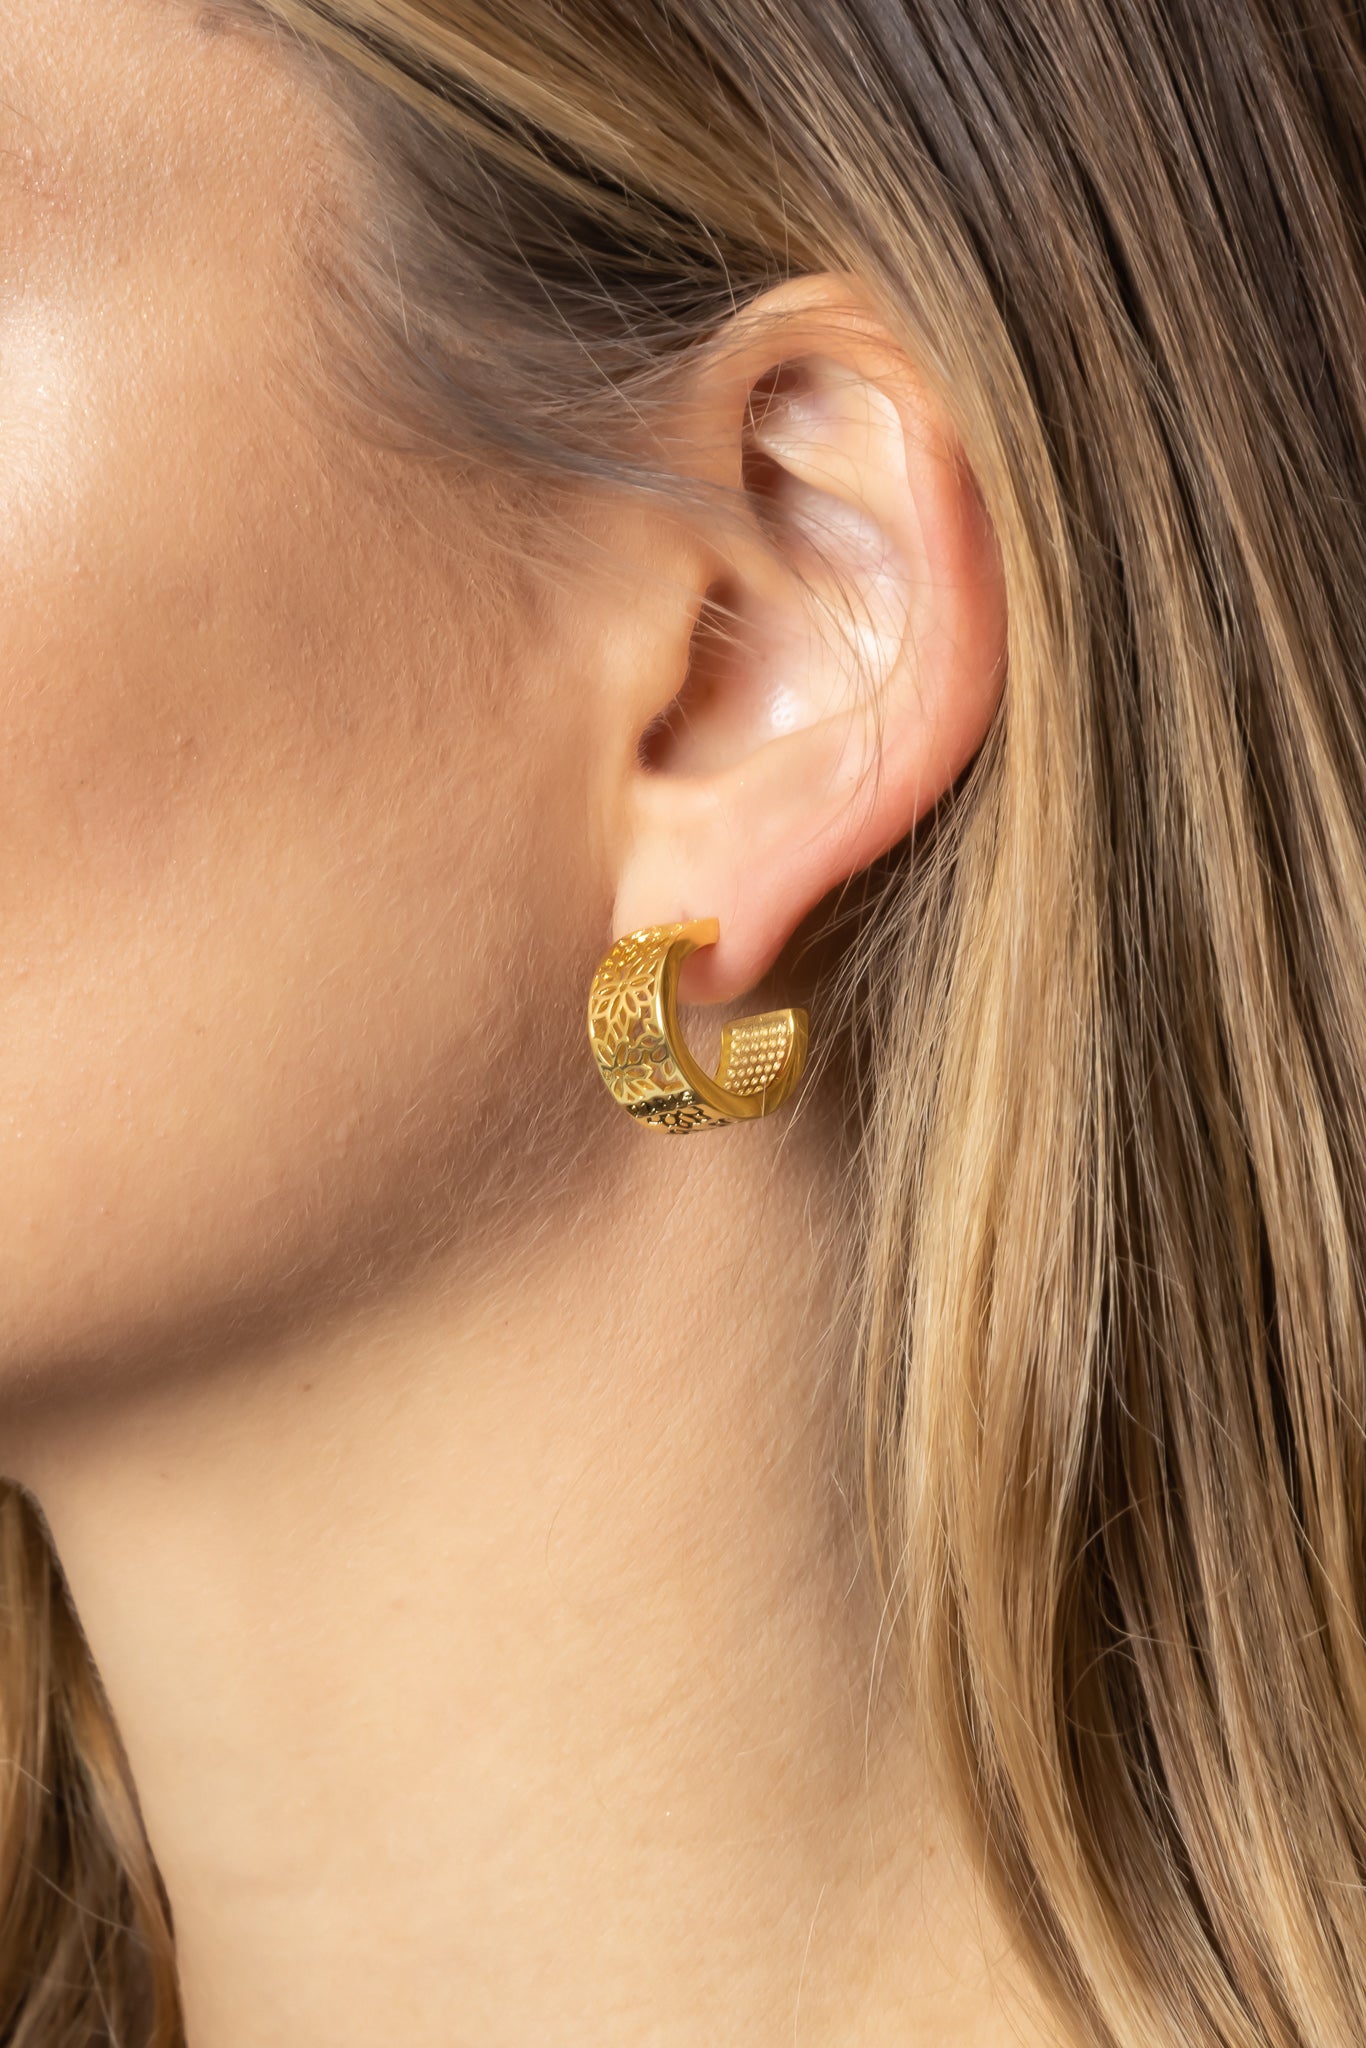 14K Gold Dipped Post Back Earrings